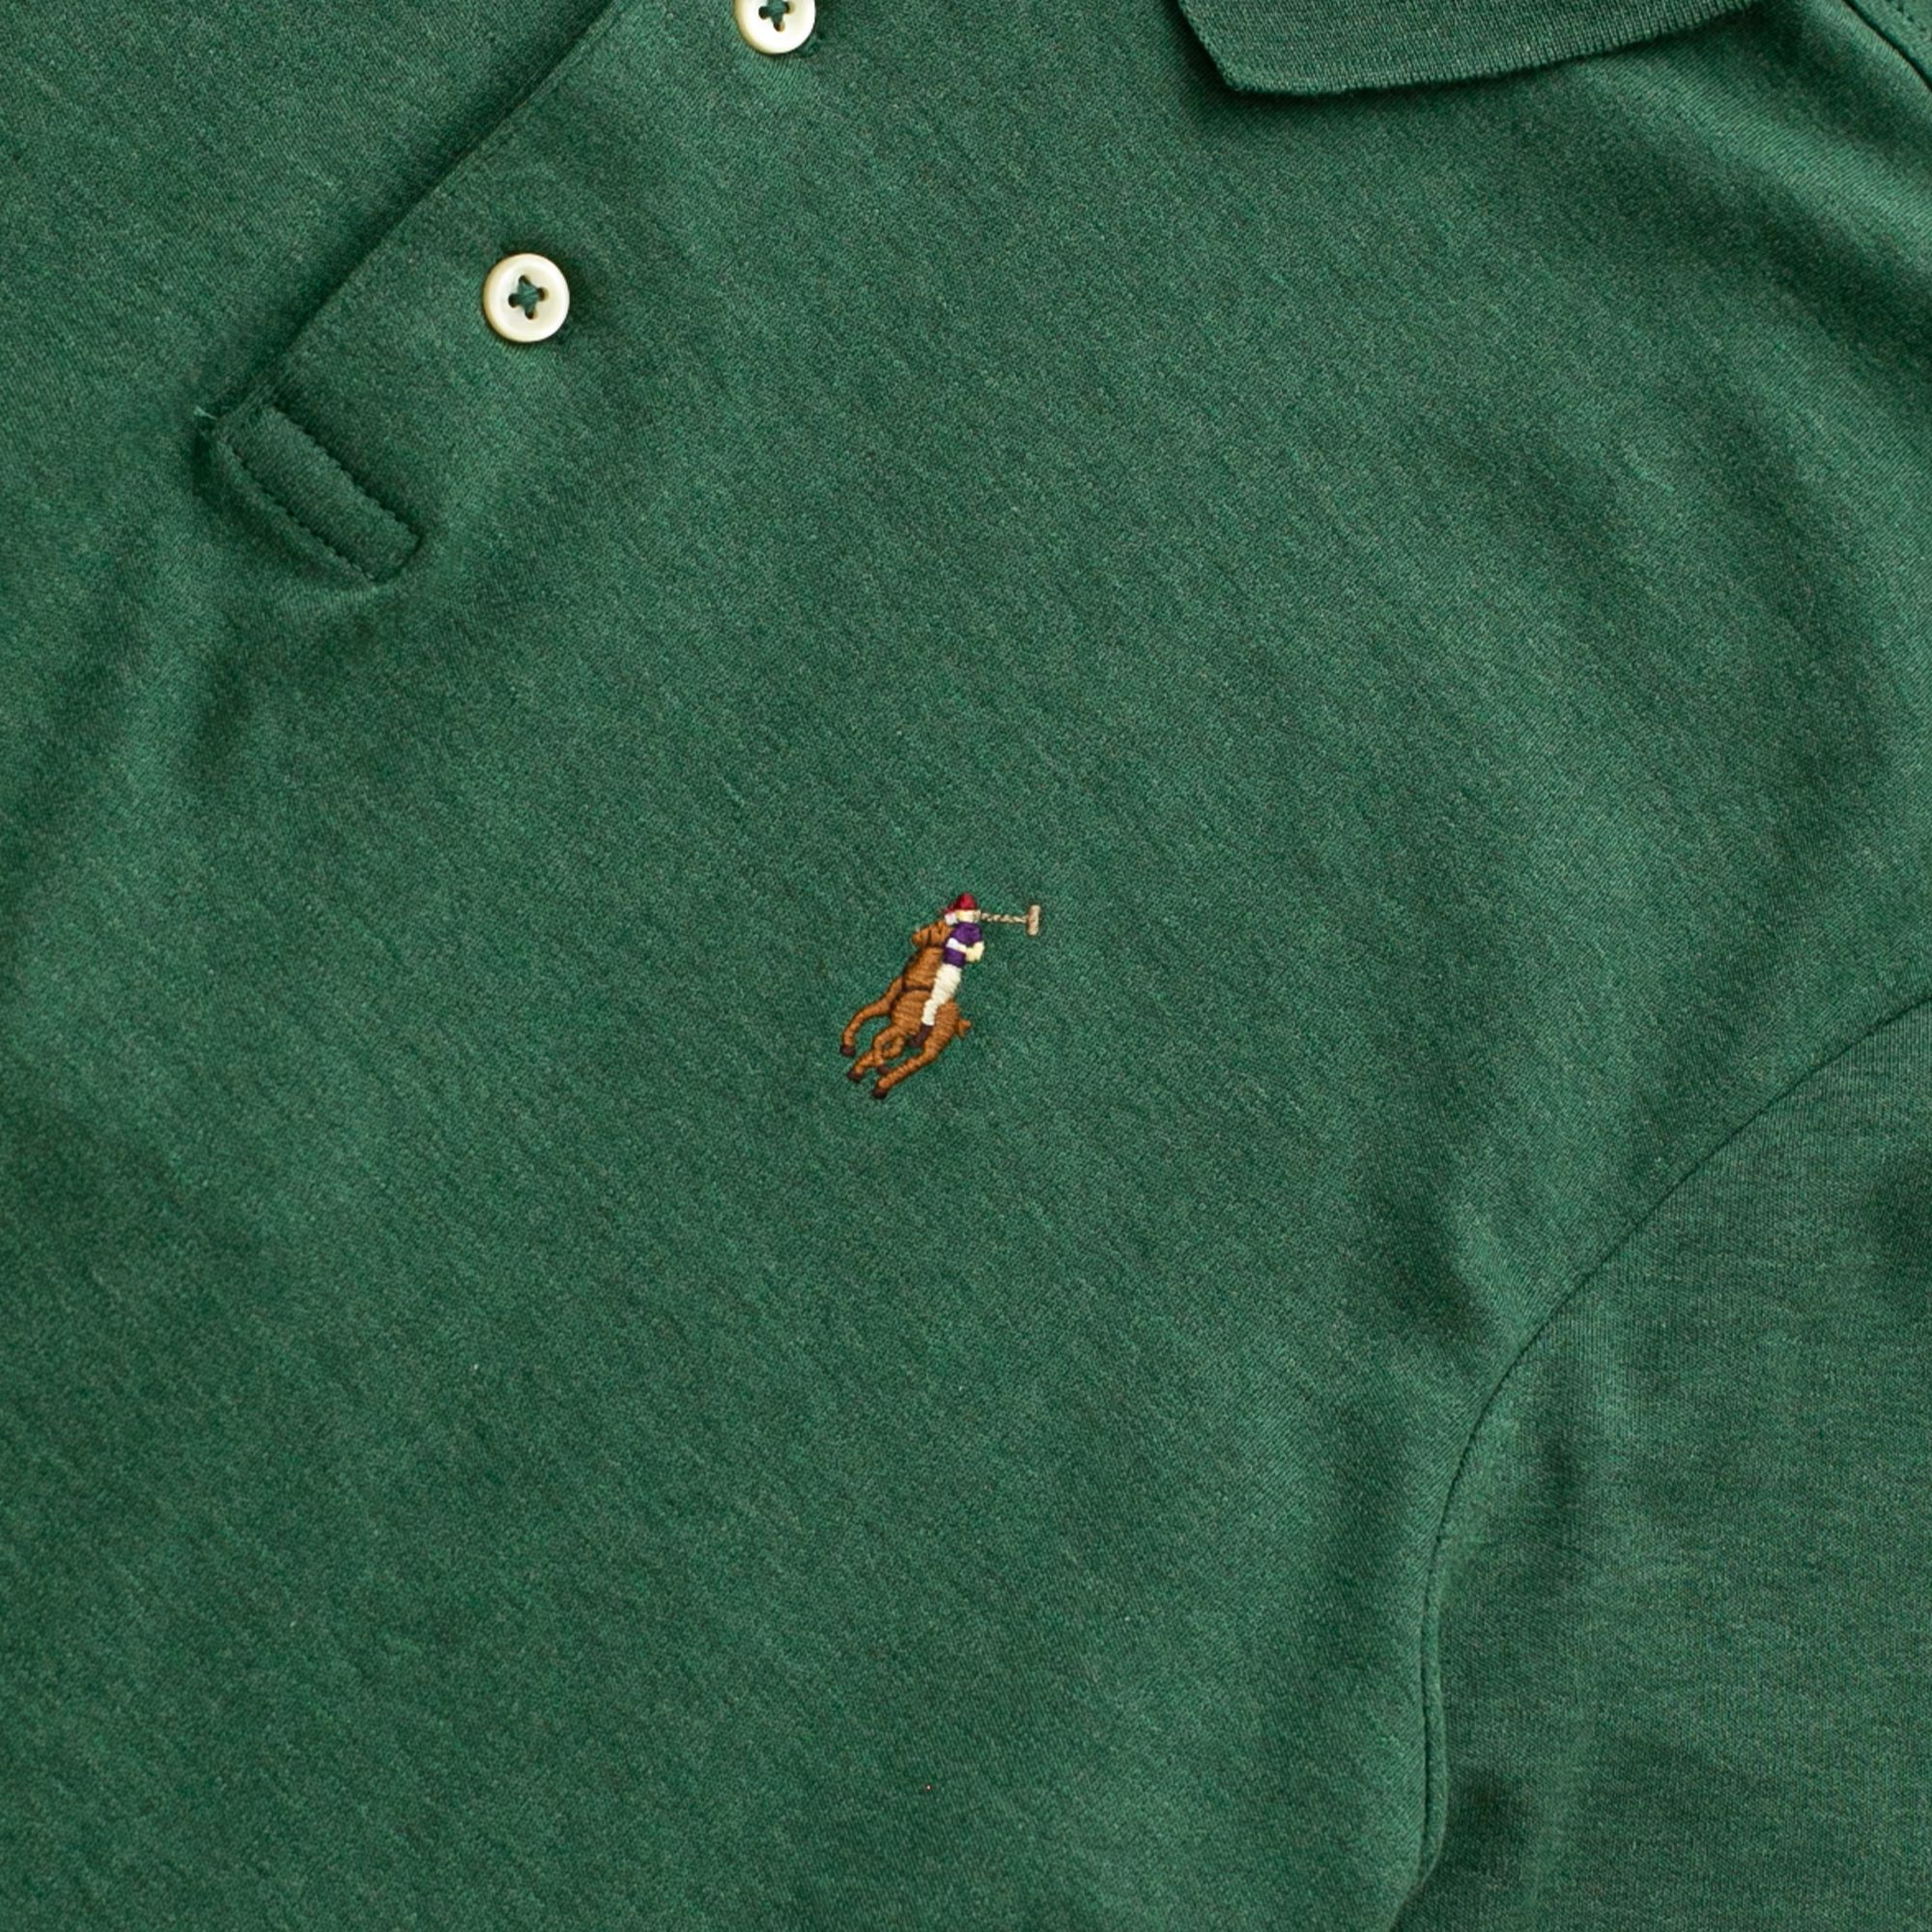  Ralph Lauren Soft Cotton Polo Shirt - Green Marl Heather (Classic) 